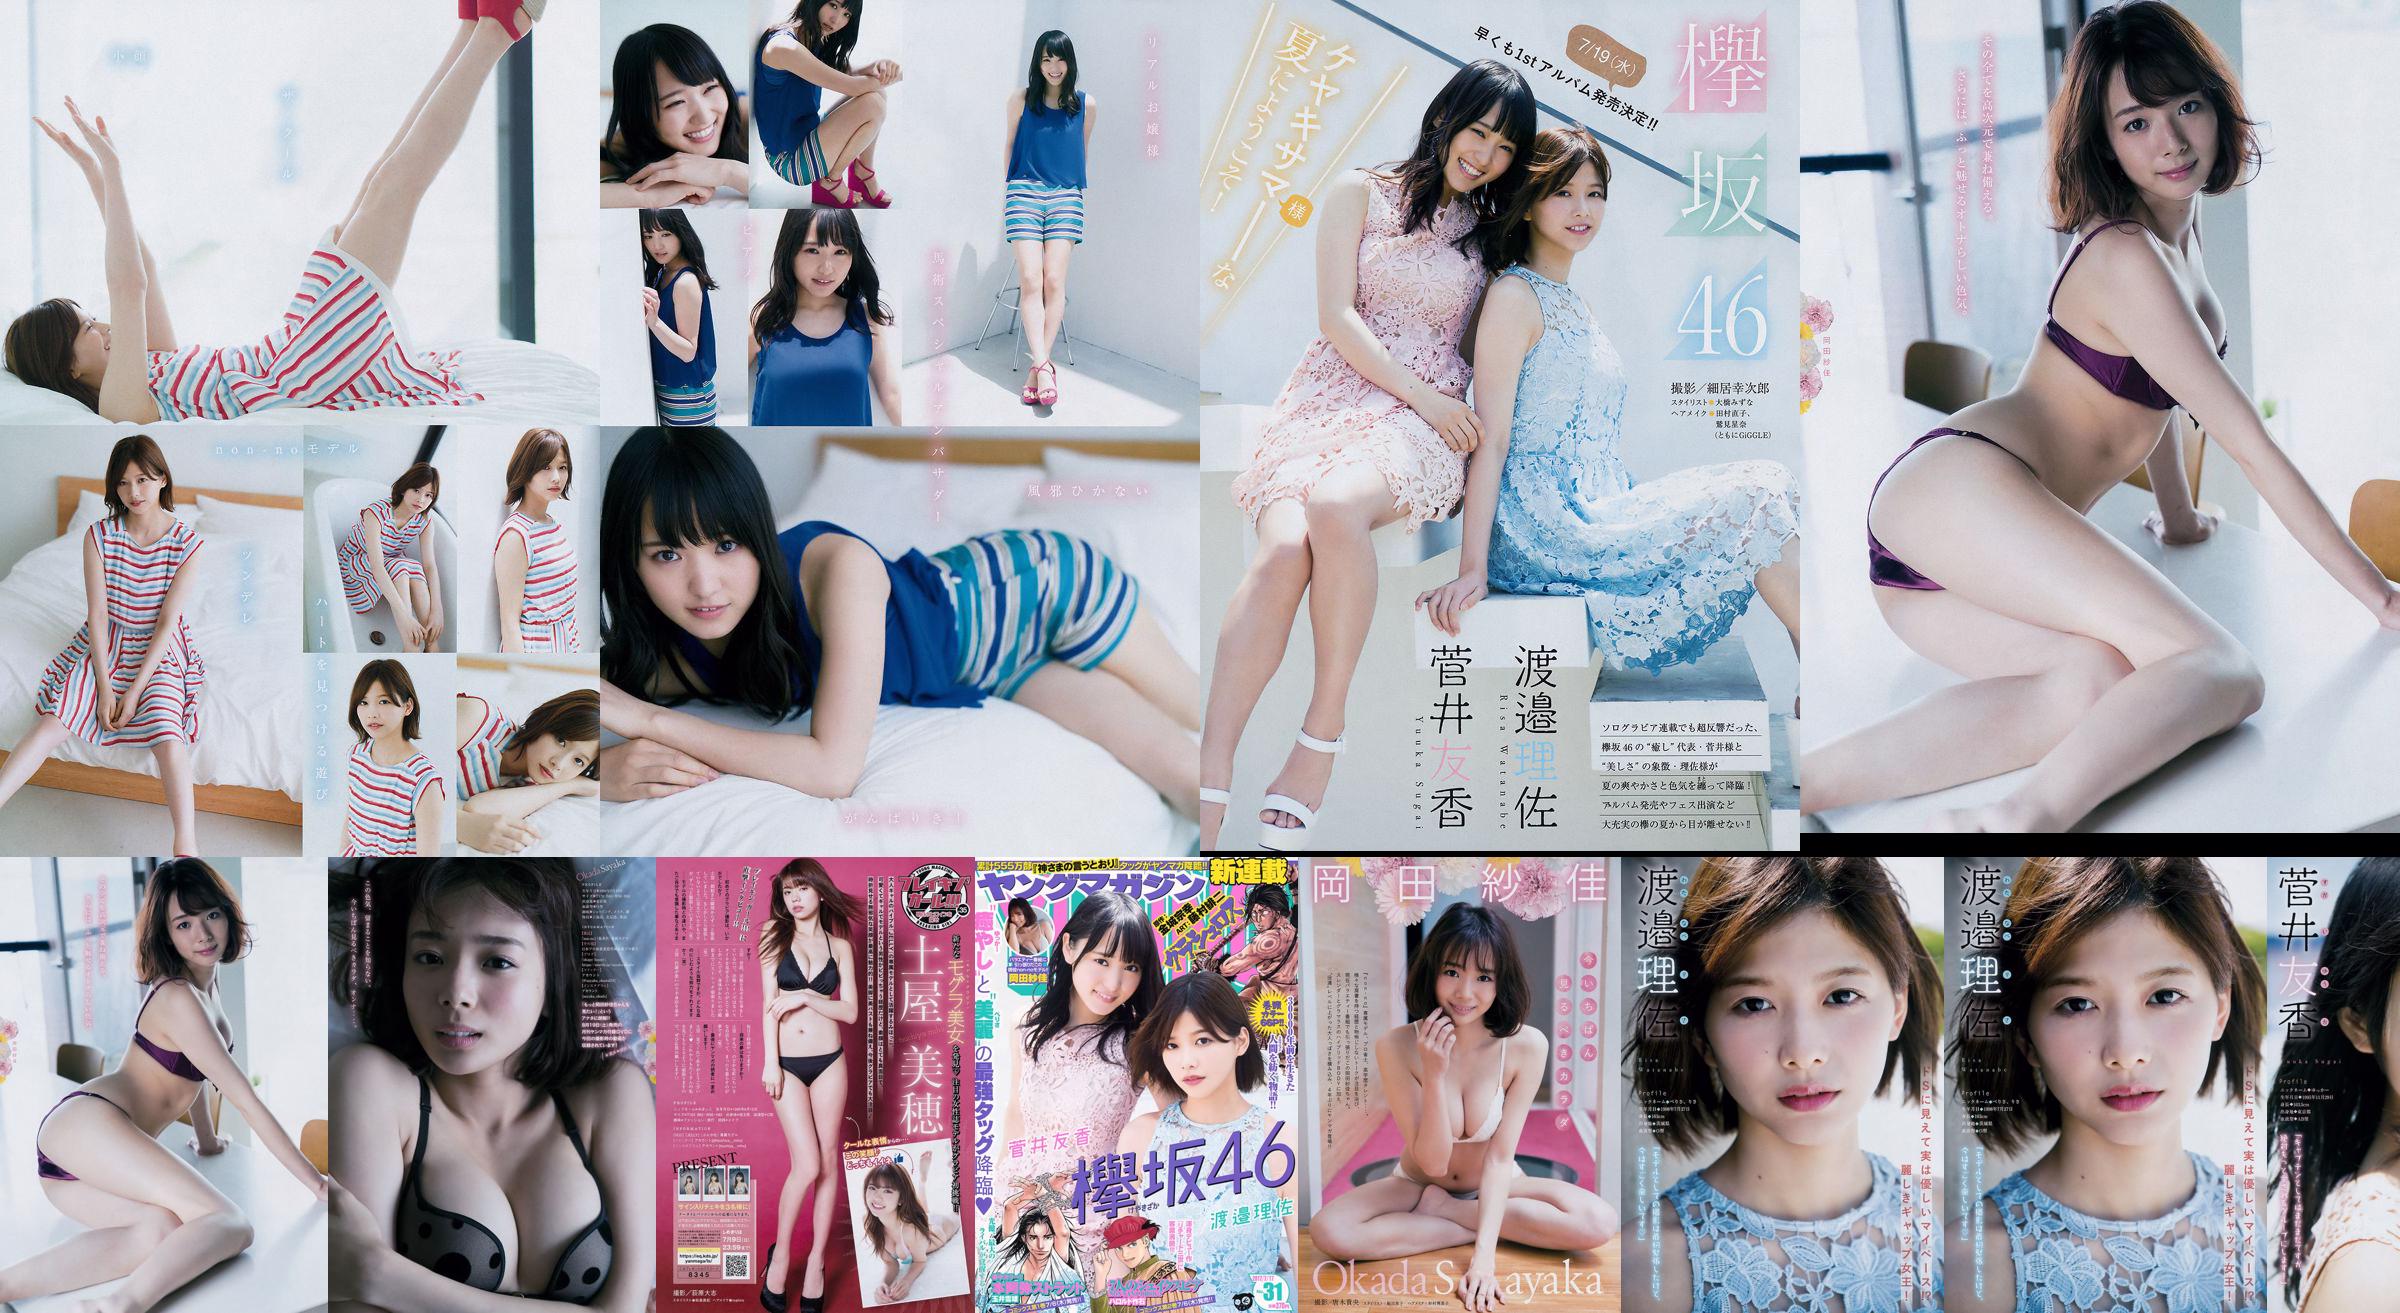 [Young Magazine] Watanabe Risa, Sugai Yuka, Okada Saika 2017 No.31 Photo Magazine No.567cf4 Pagina 1